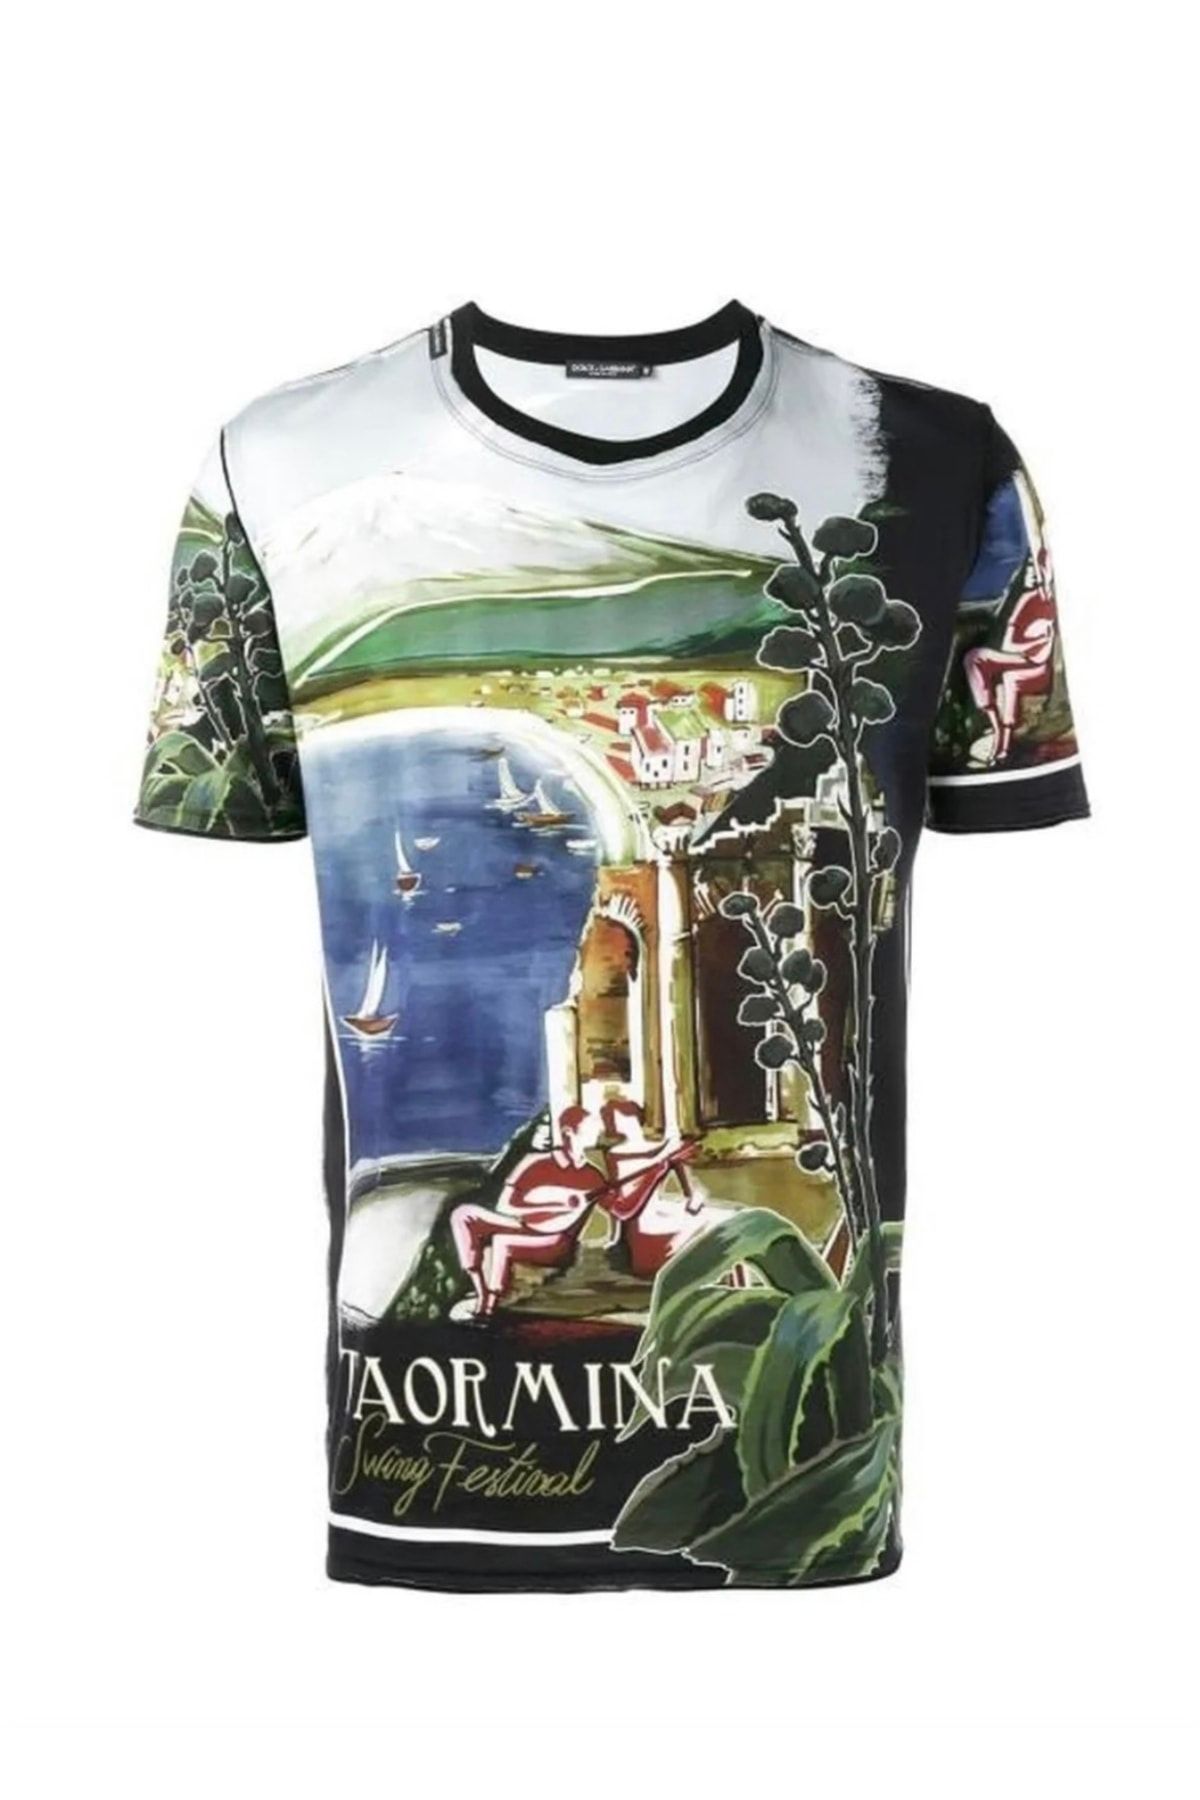 Dolce&Gabbana Taormina Erkek Print T-shirt G8hc7thp7db